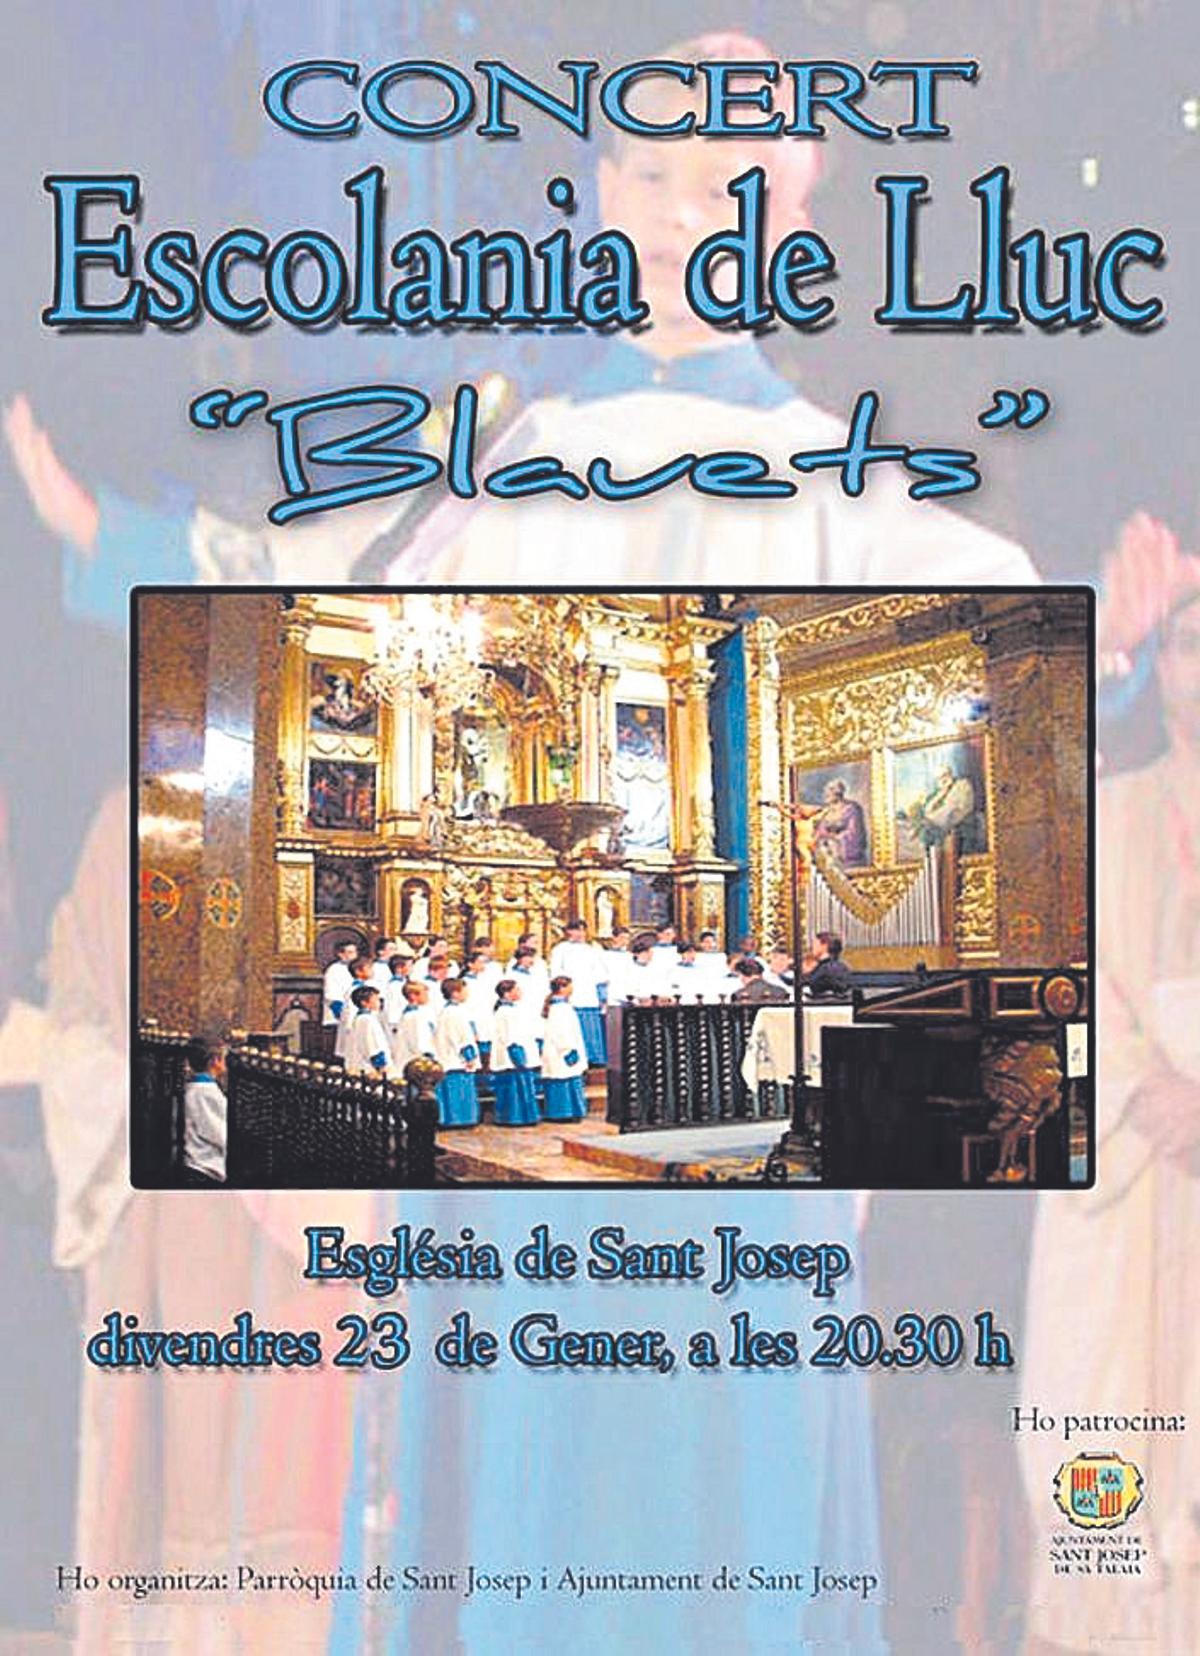 Cartell anunciador del concert que l’Escolania de Lluc oferí a l’Església de Sant Josep el gener de 2010.